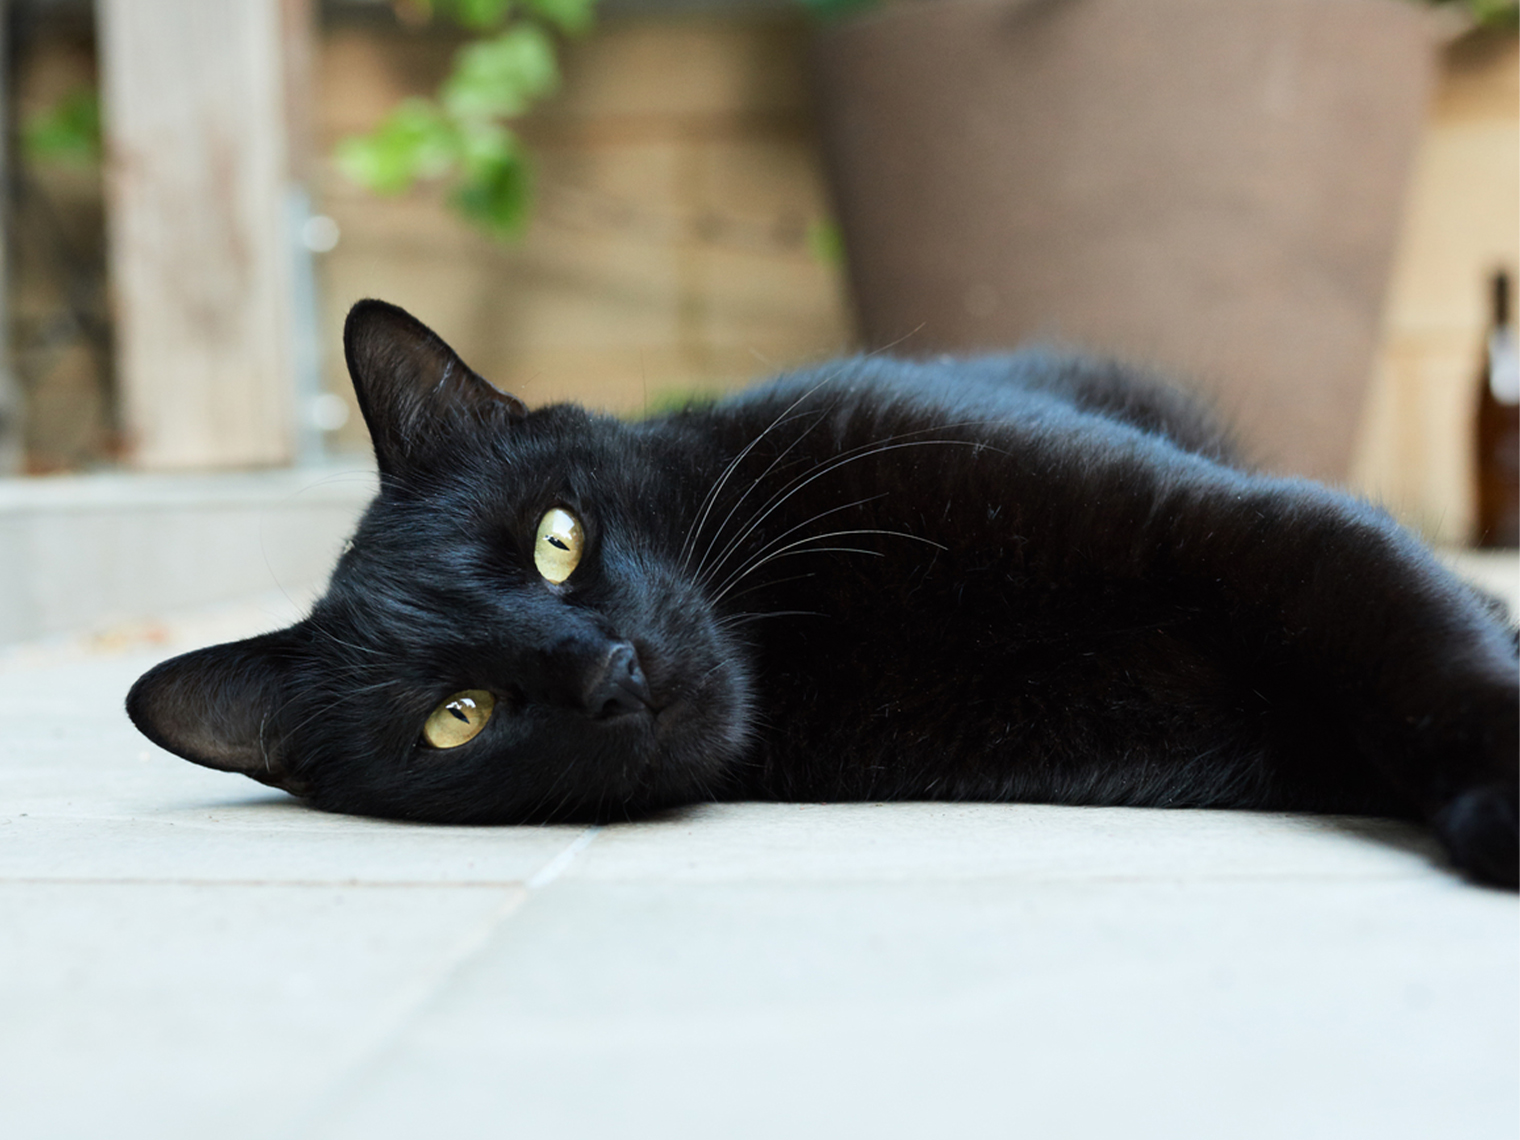 zwarte kat met gele ogen die op hun zij liggen